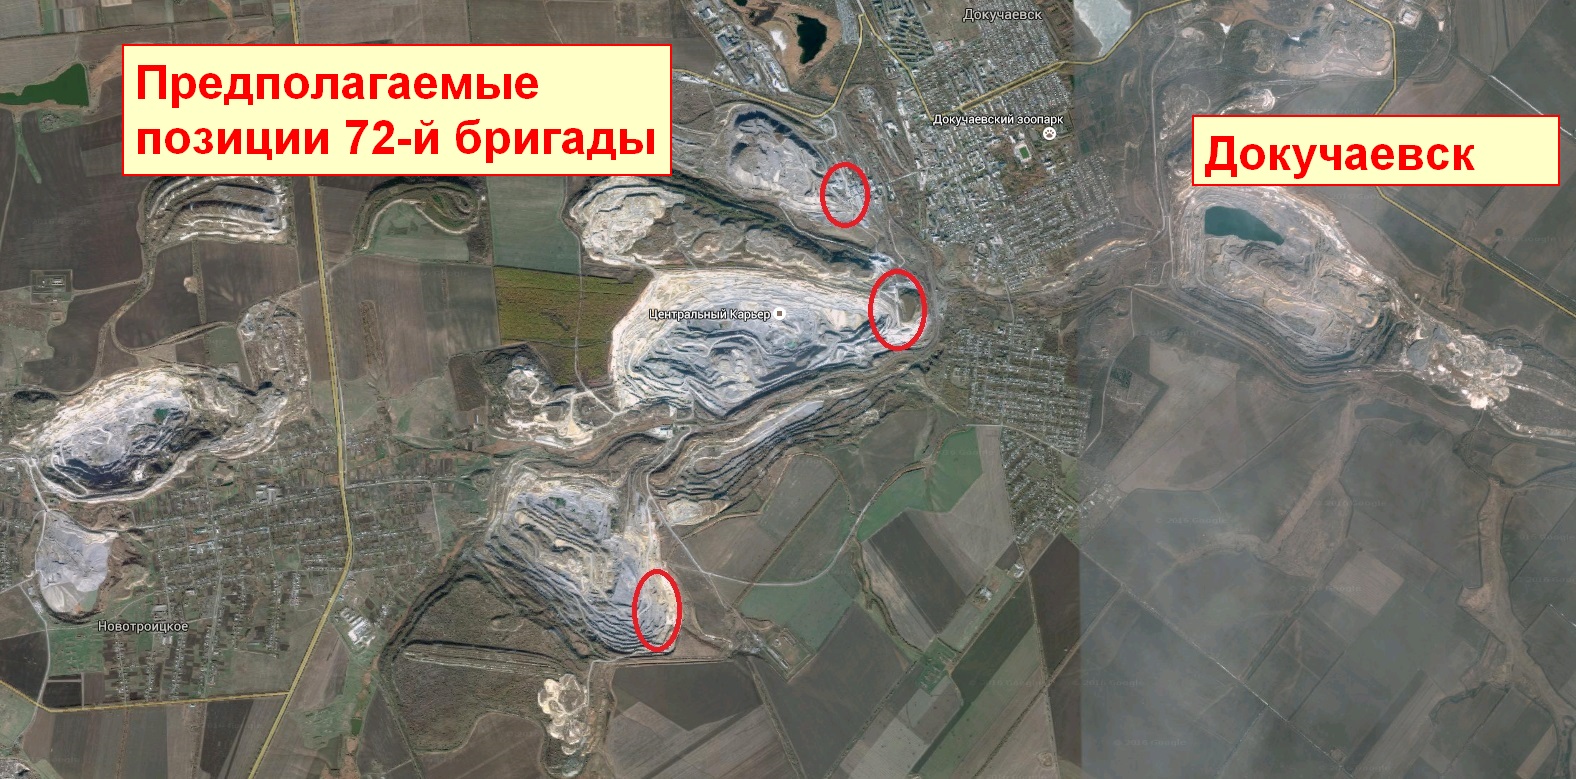 Навіщо Путін суне танки під Докучаєвськ - фото 2